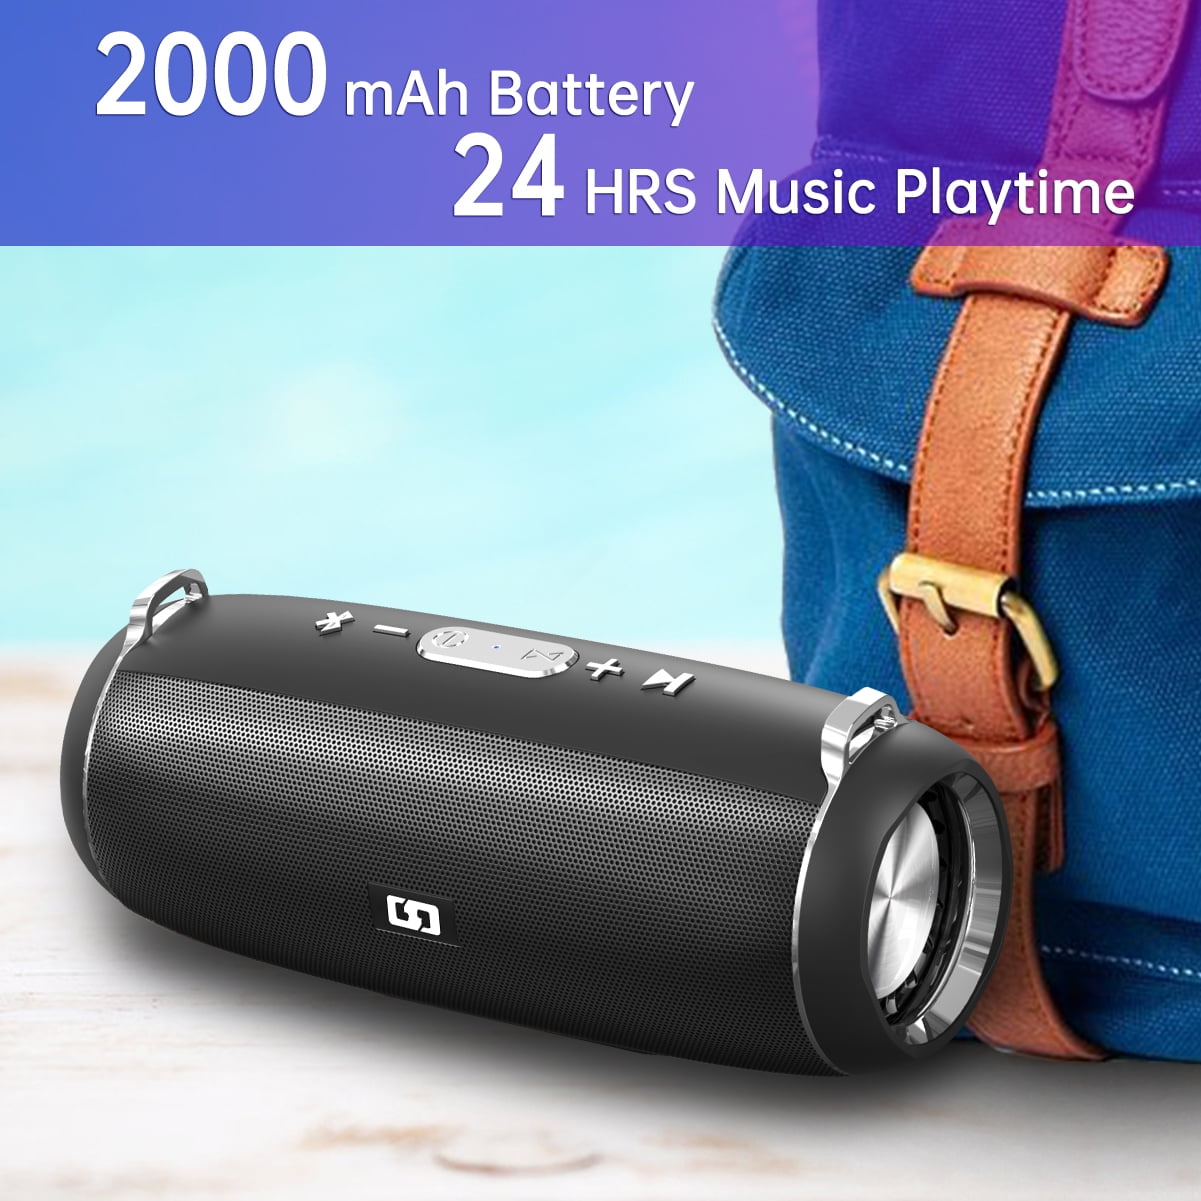 MP3 portable speaker SBA1700/00